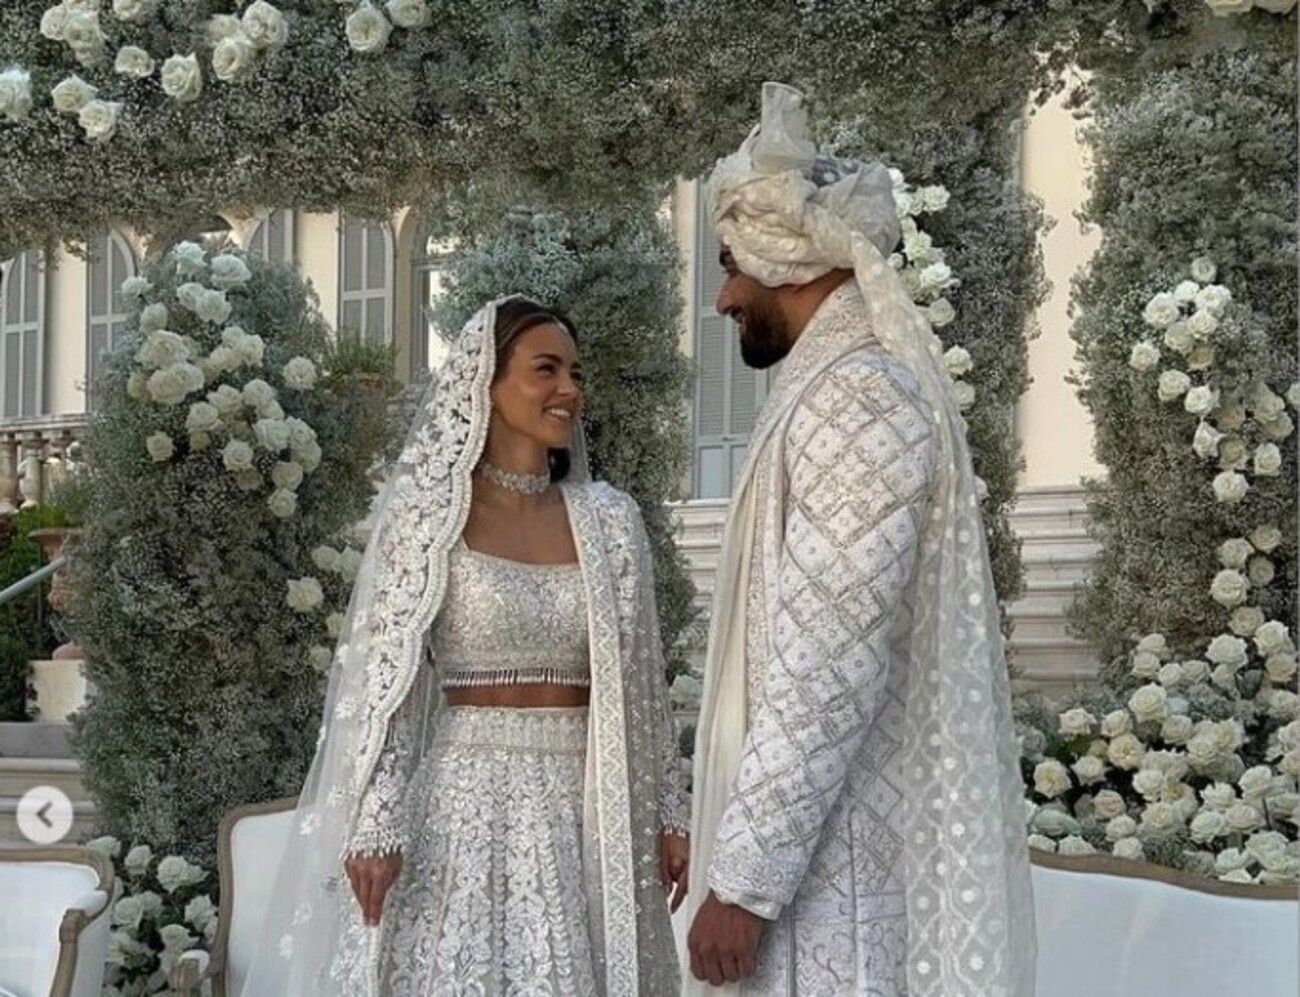 Умар Камані одружився з Натою Адель - весілля коштувало 25 мільйонів доларів